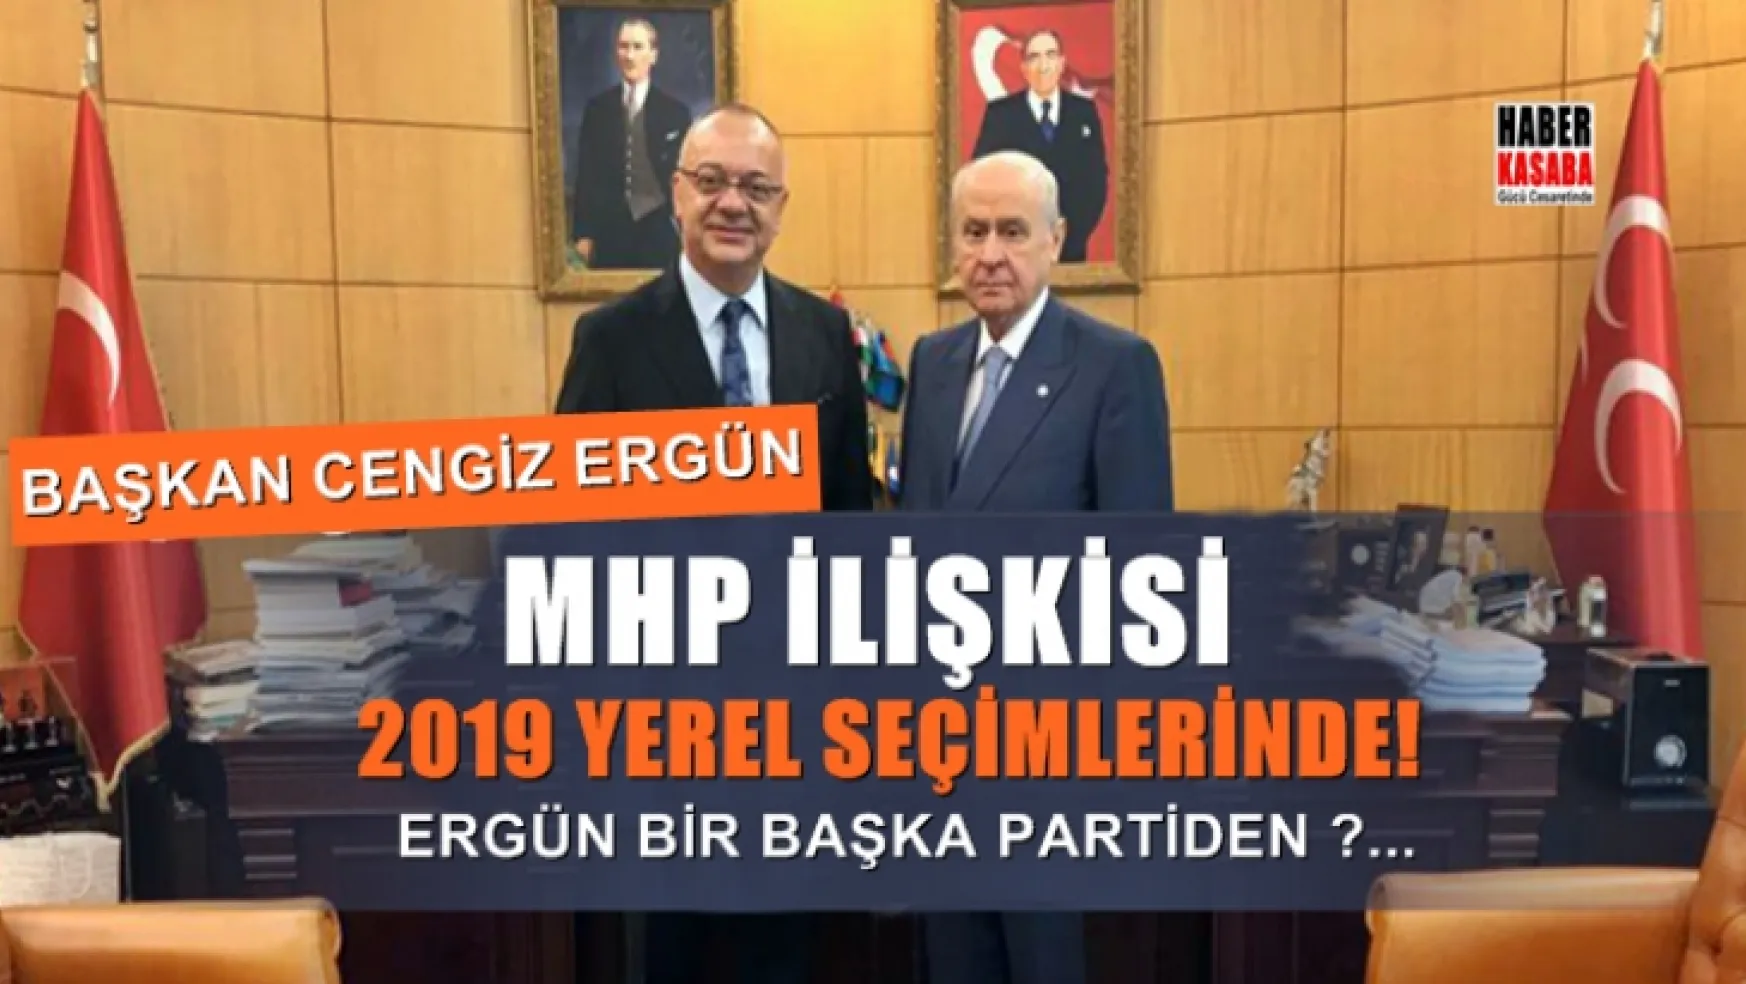 MHP'li Başkan Cengiz Ergün aday gösterilmezse hangi partiden?...